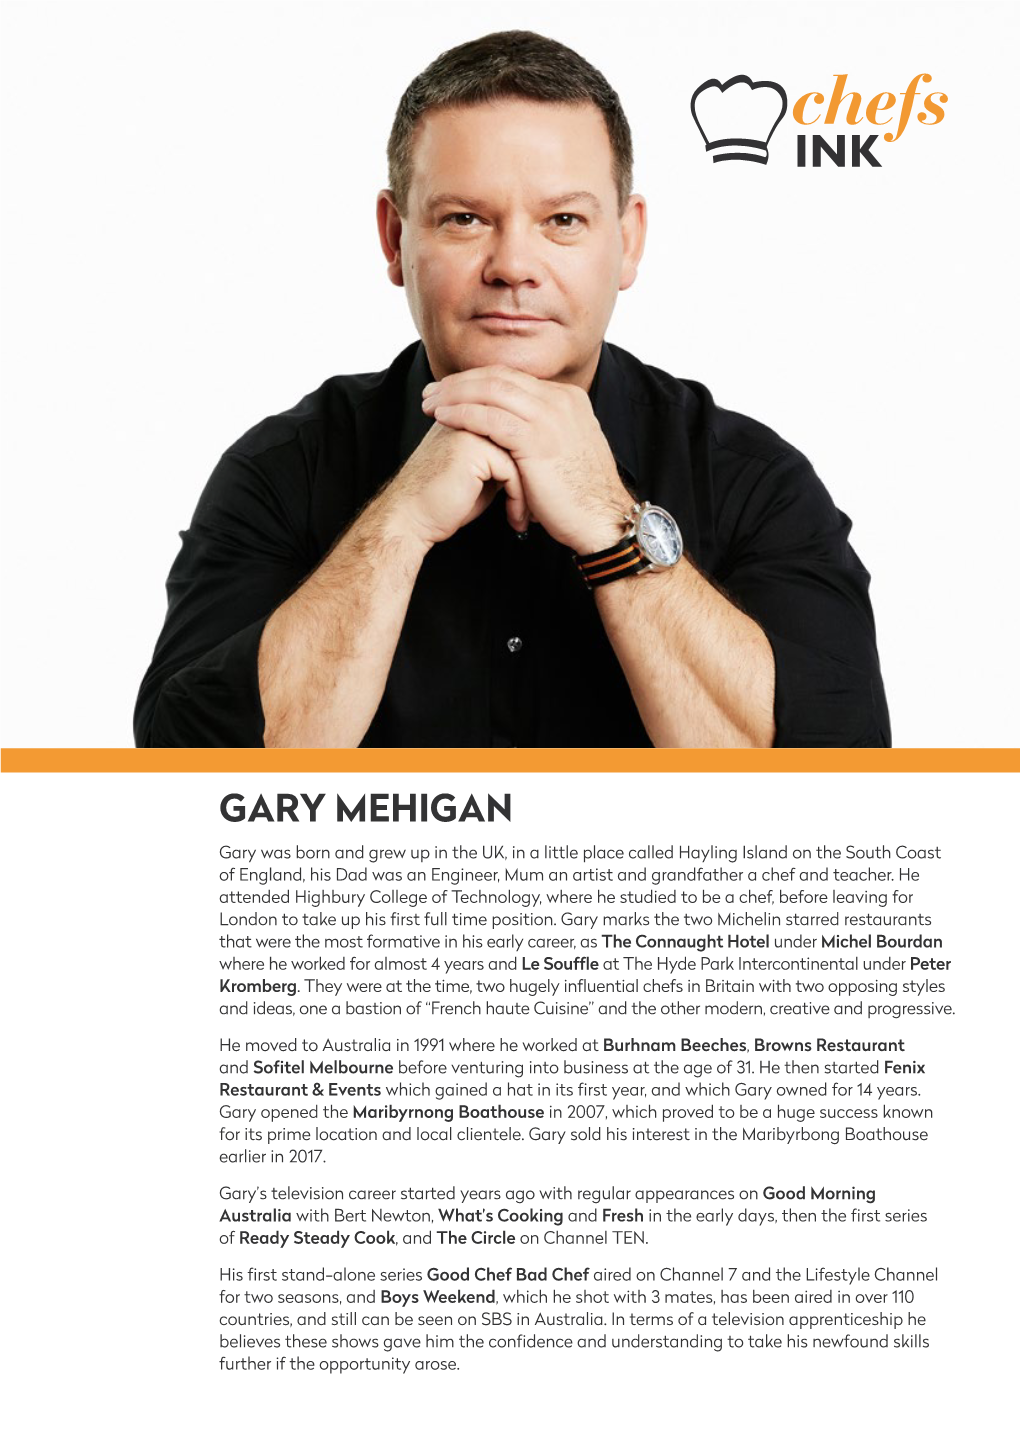 Gary Mehigan